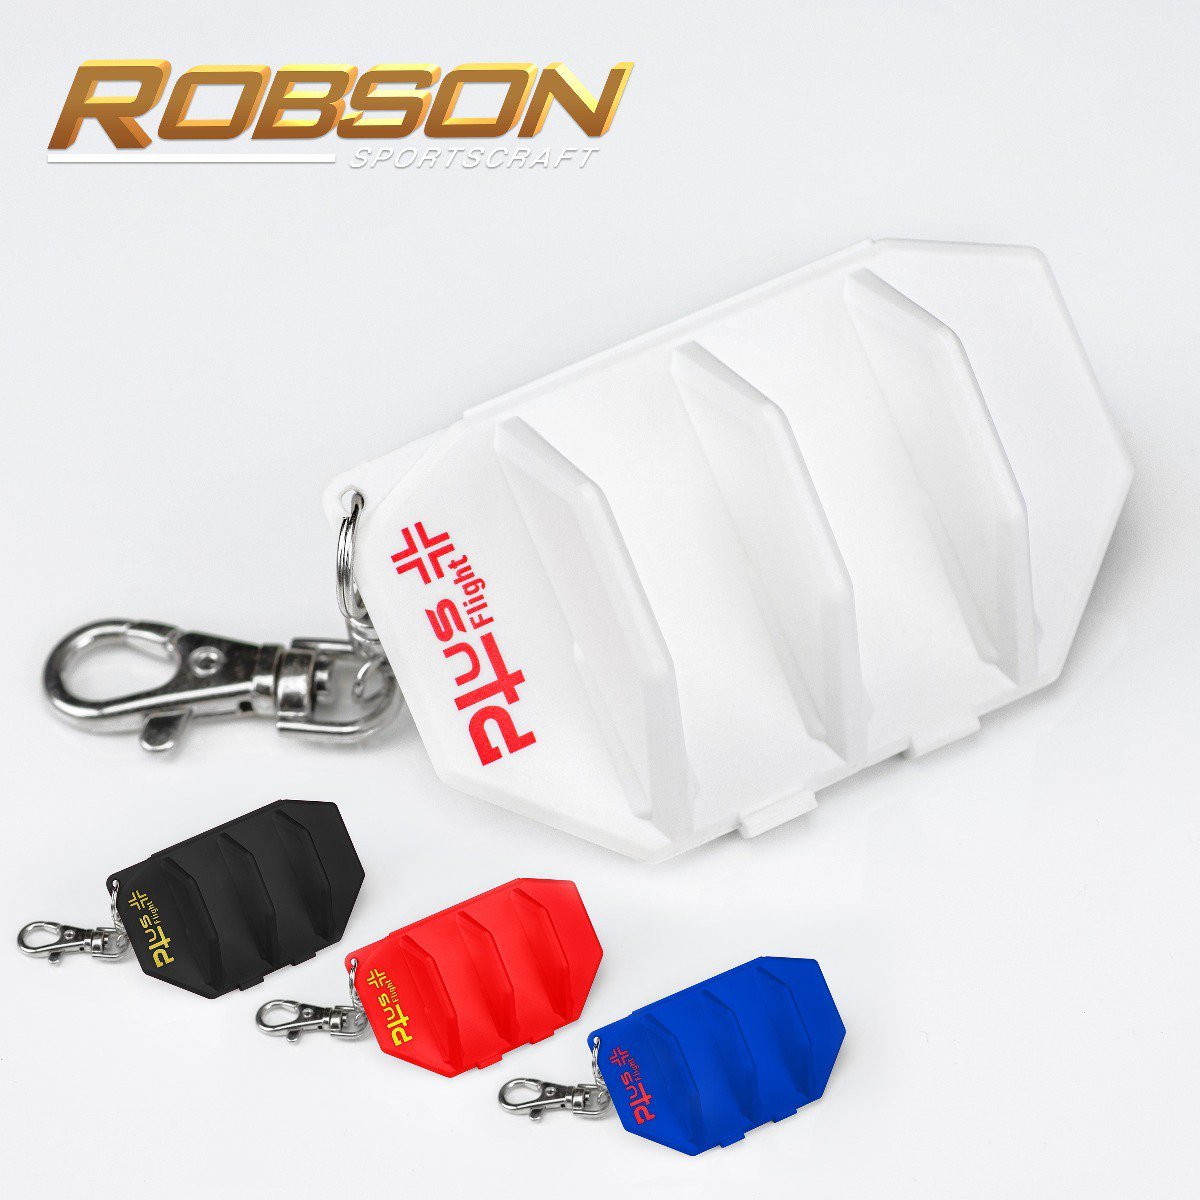 ROBSON Plus- FLIGHT CASE - WHITE